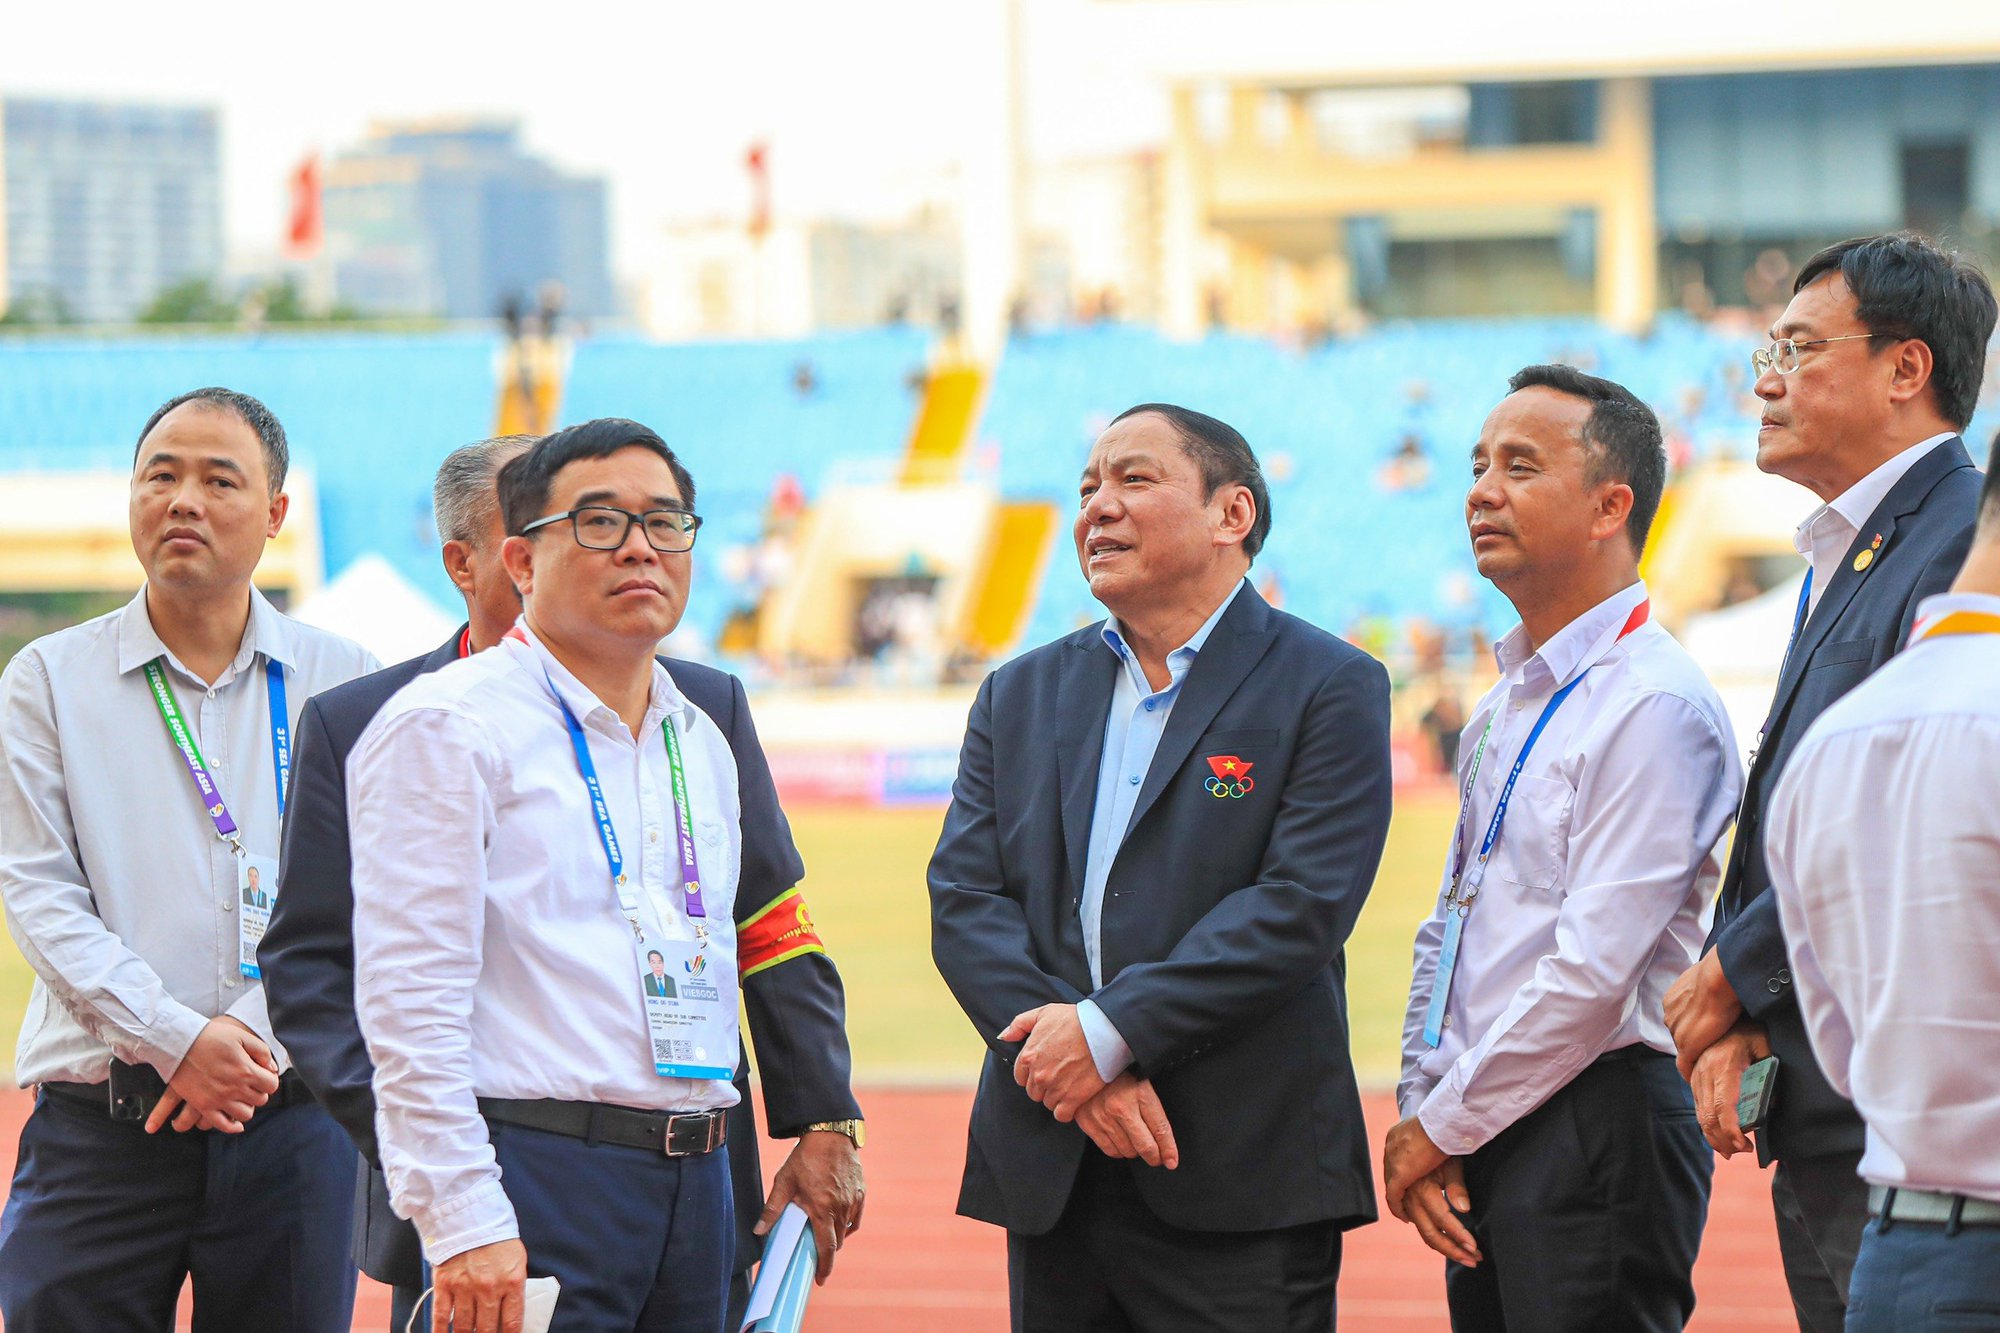   Bộ trưởng Nguyễn Văn Hùng: Chúng ta không say sưa, ngủ quên trong chiến thắng - Ảnh 9.